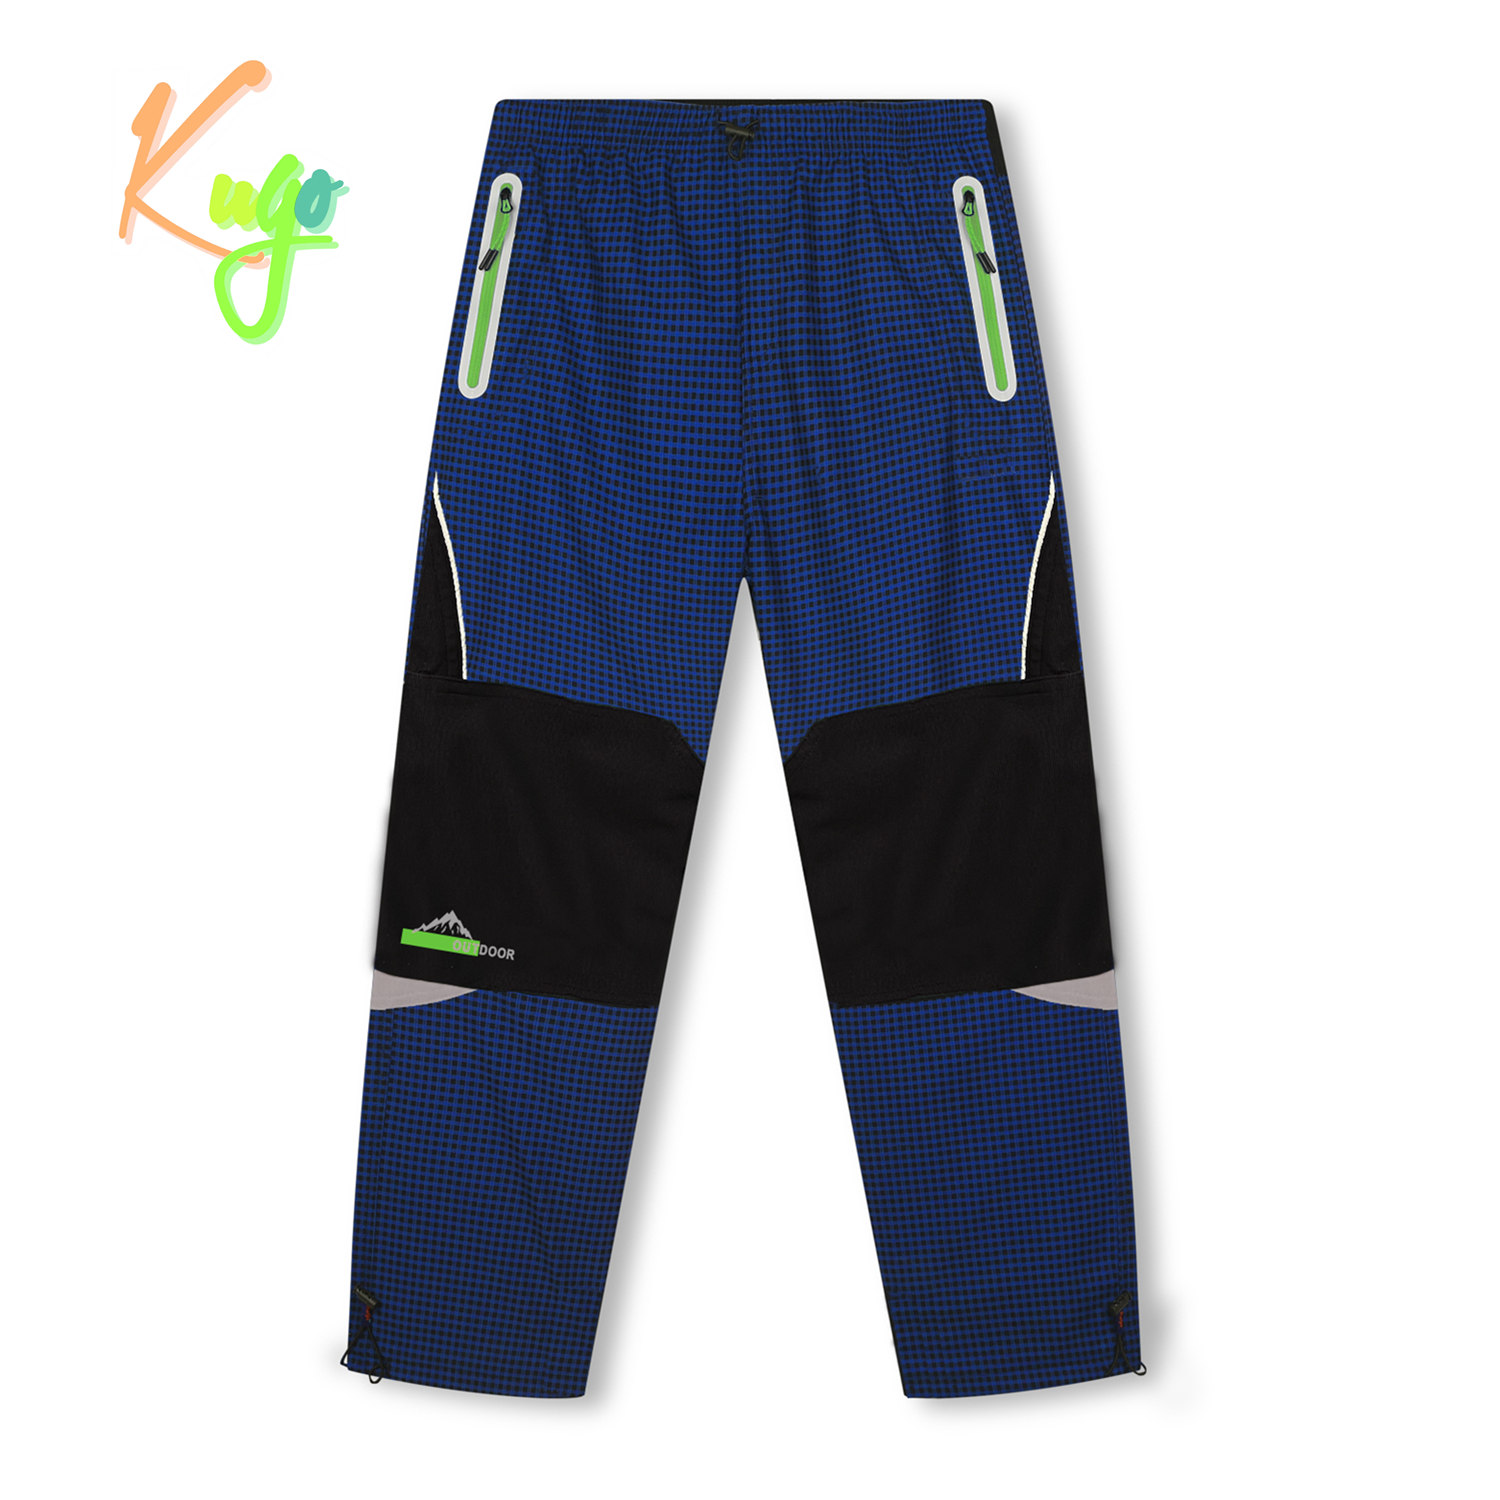 Chlapecké zateplené outdoorové kalhoty - KUGO C7772, modrá/ zelené zipy Barva: Modrá, Velikost: 140